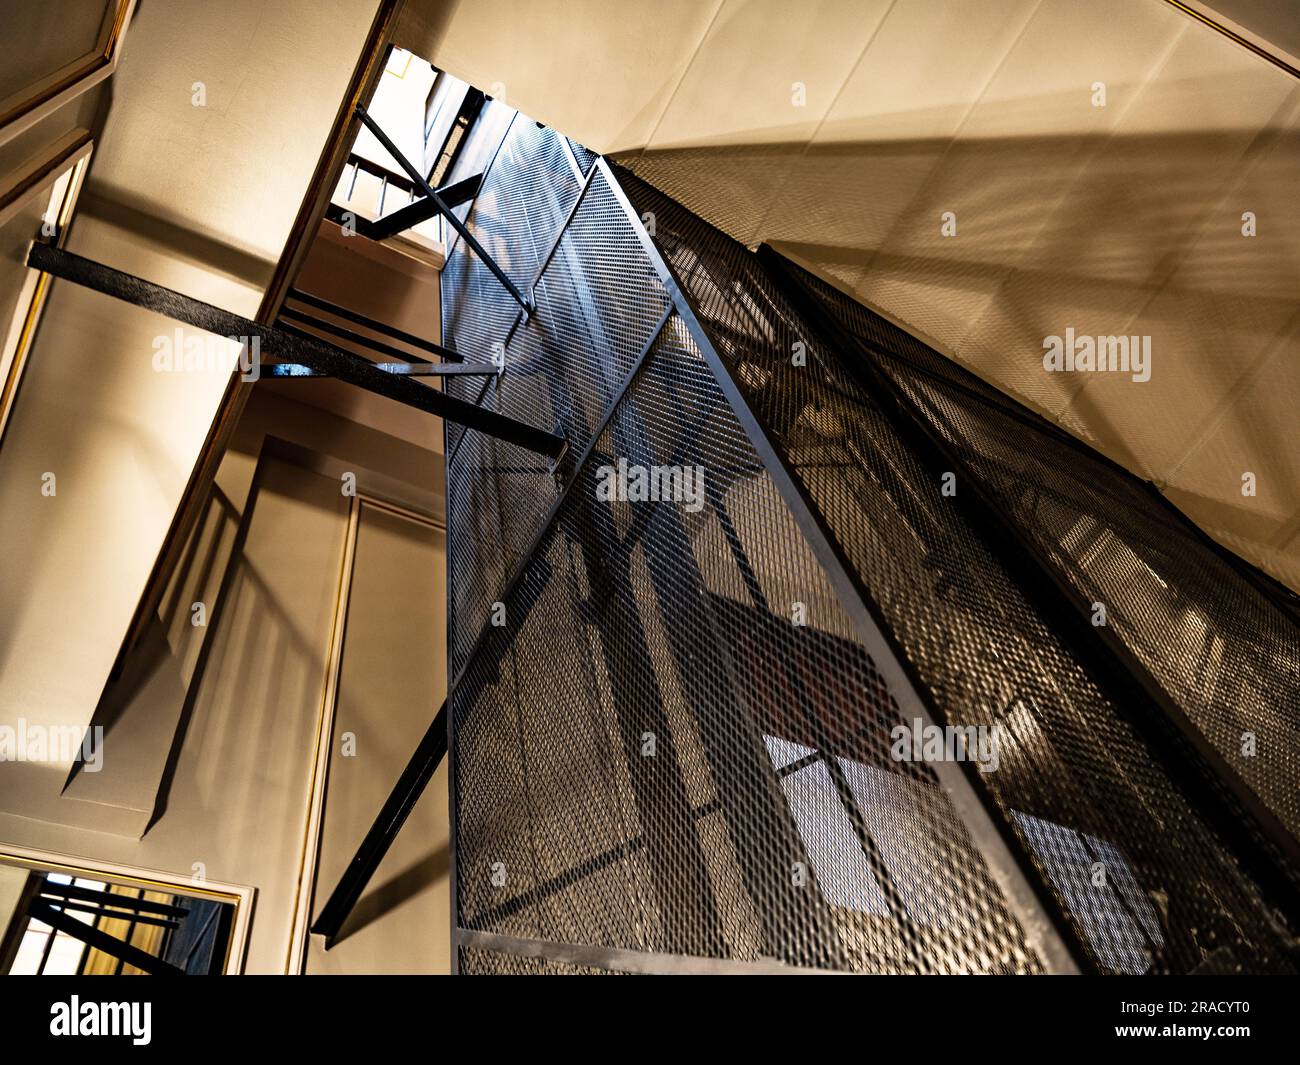 Das Innere des frühen Victorian Pall Mall Clubs zeigt einen Fahrstuhl mit Stahlrahmen (Fahrstuhl) und schattige Beleuchtung, mit einem sehr niedrigen Winkel. Stockfoto